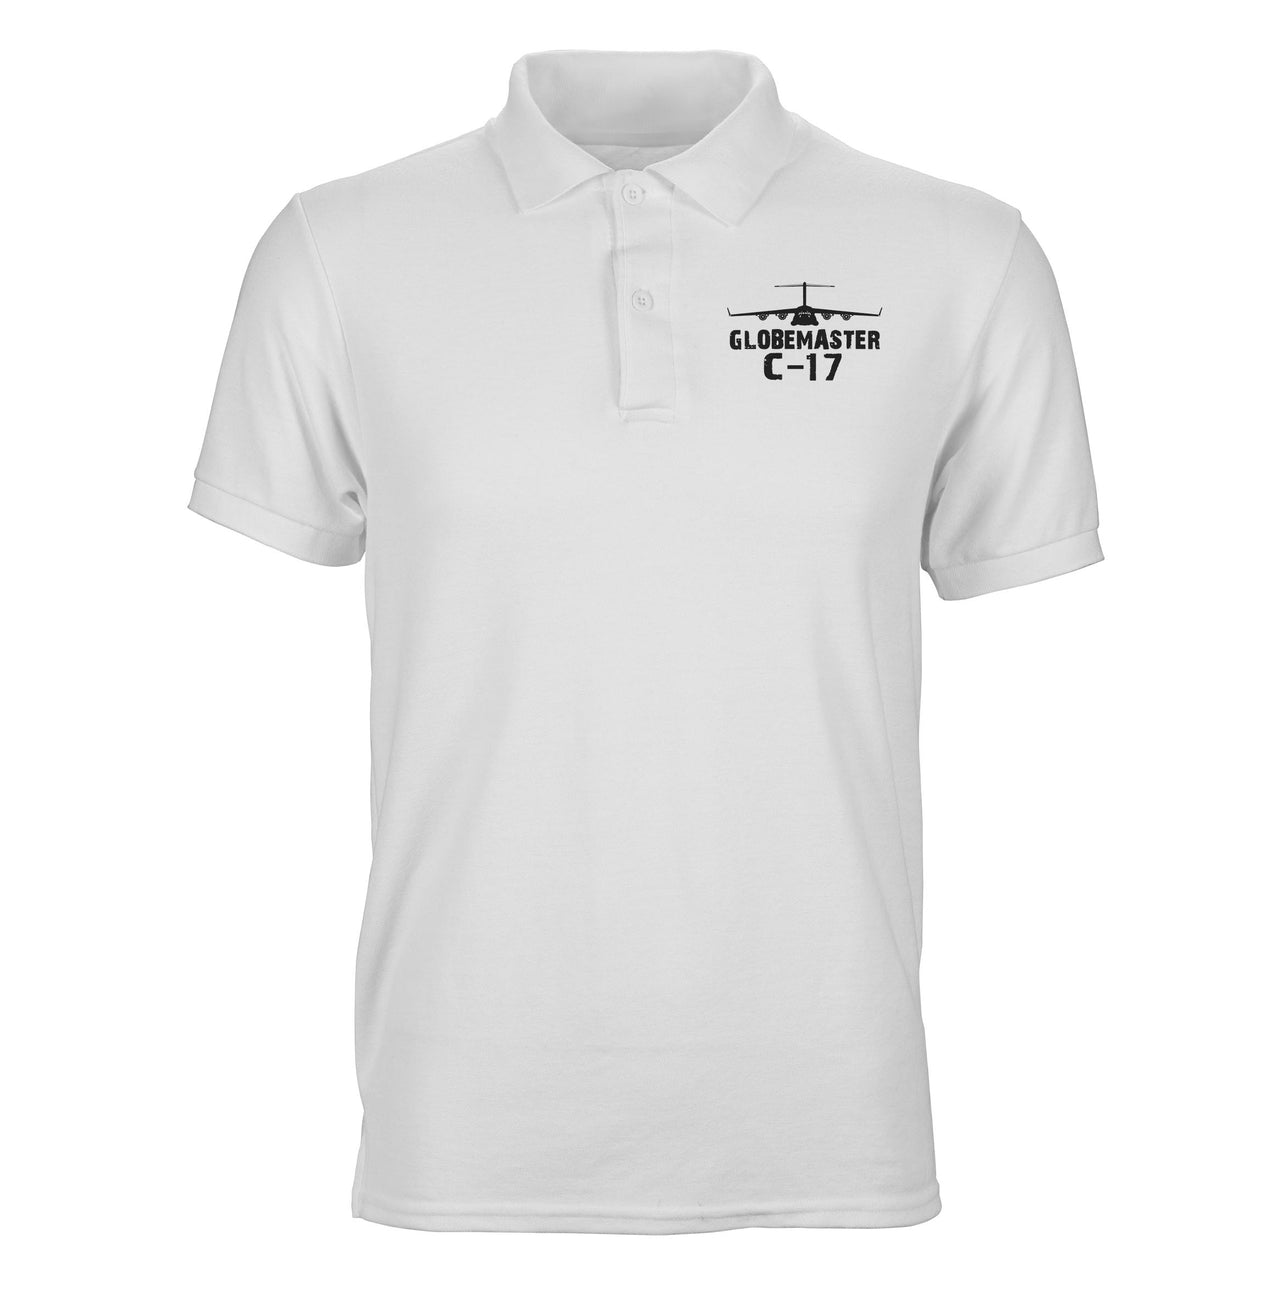 GlobeMaster C-17 & Plane Designed Polo T-Shirts